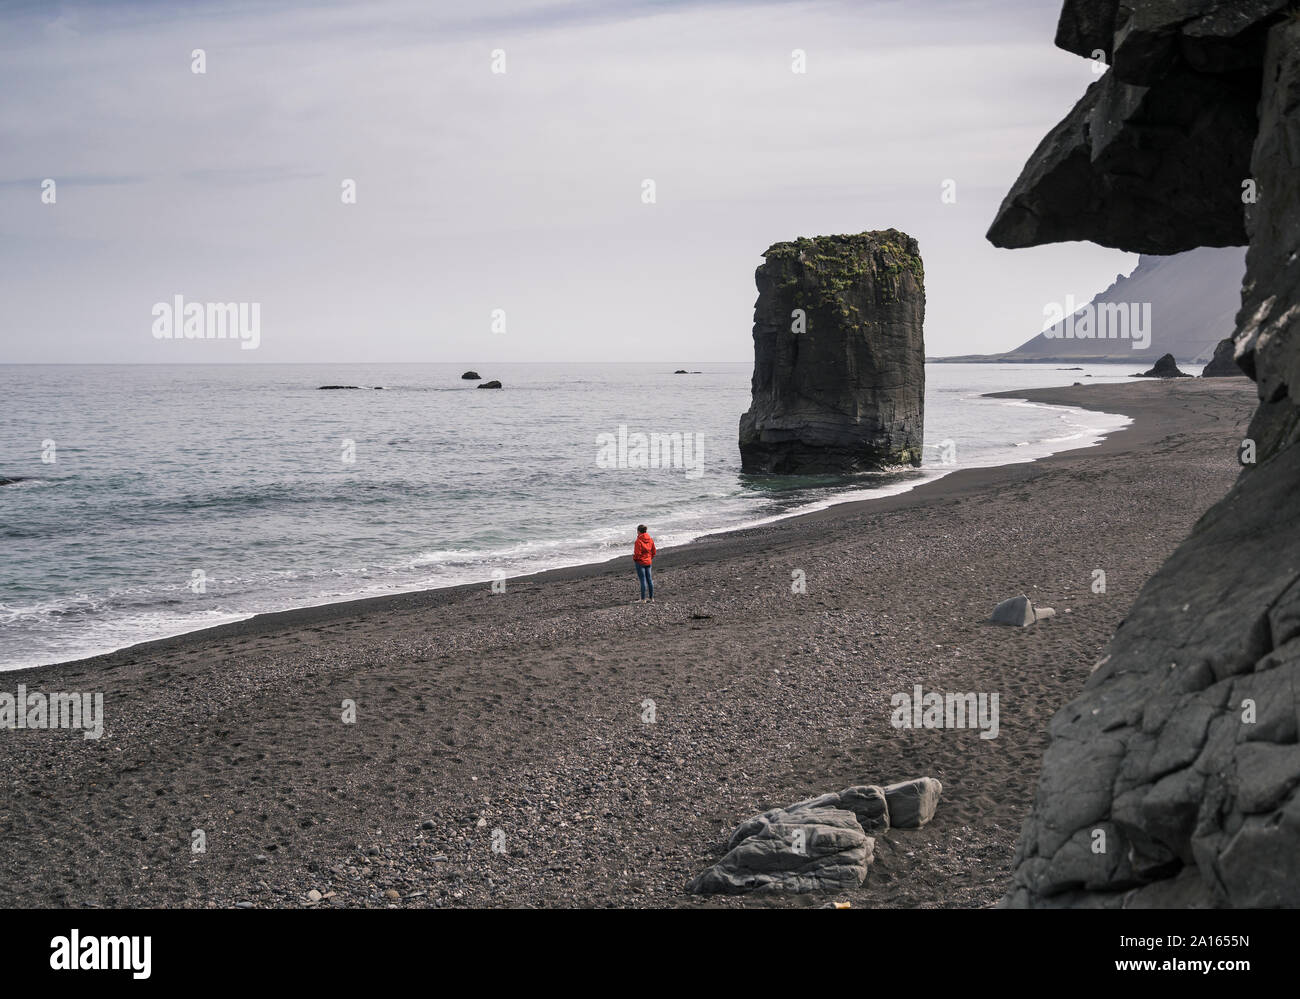 Femme sur une plage dans le sud-est de l'Islande, regardant la mer Banque D'Images